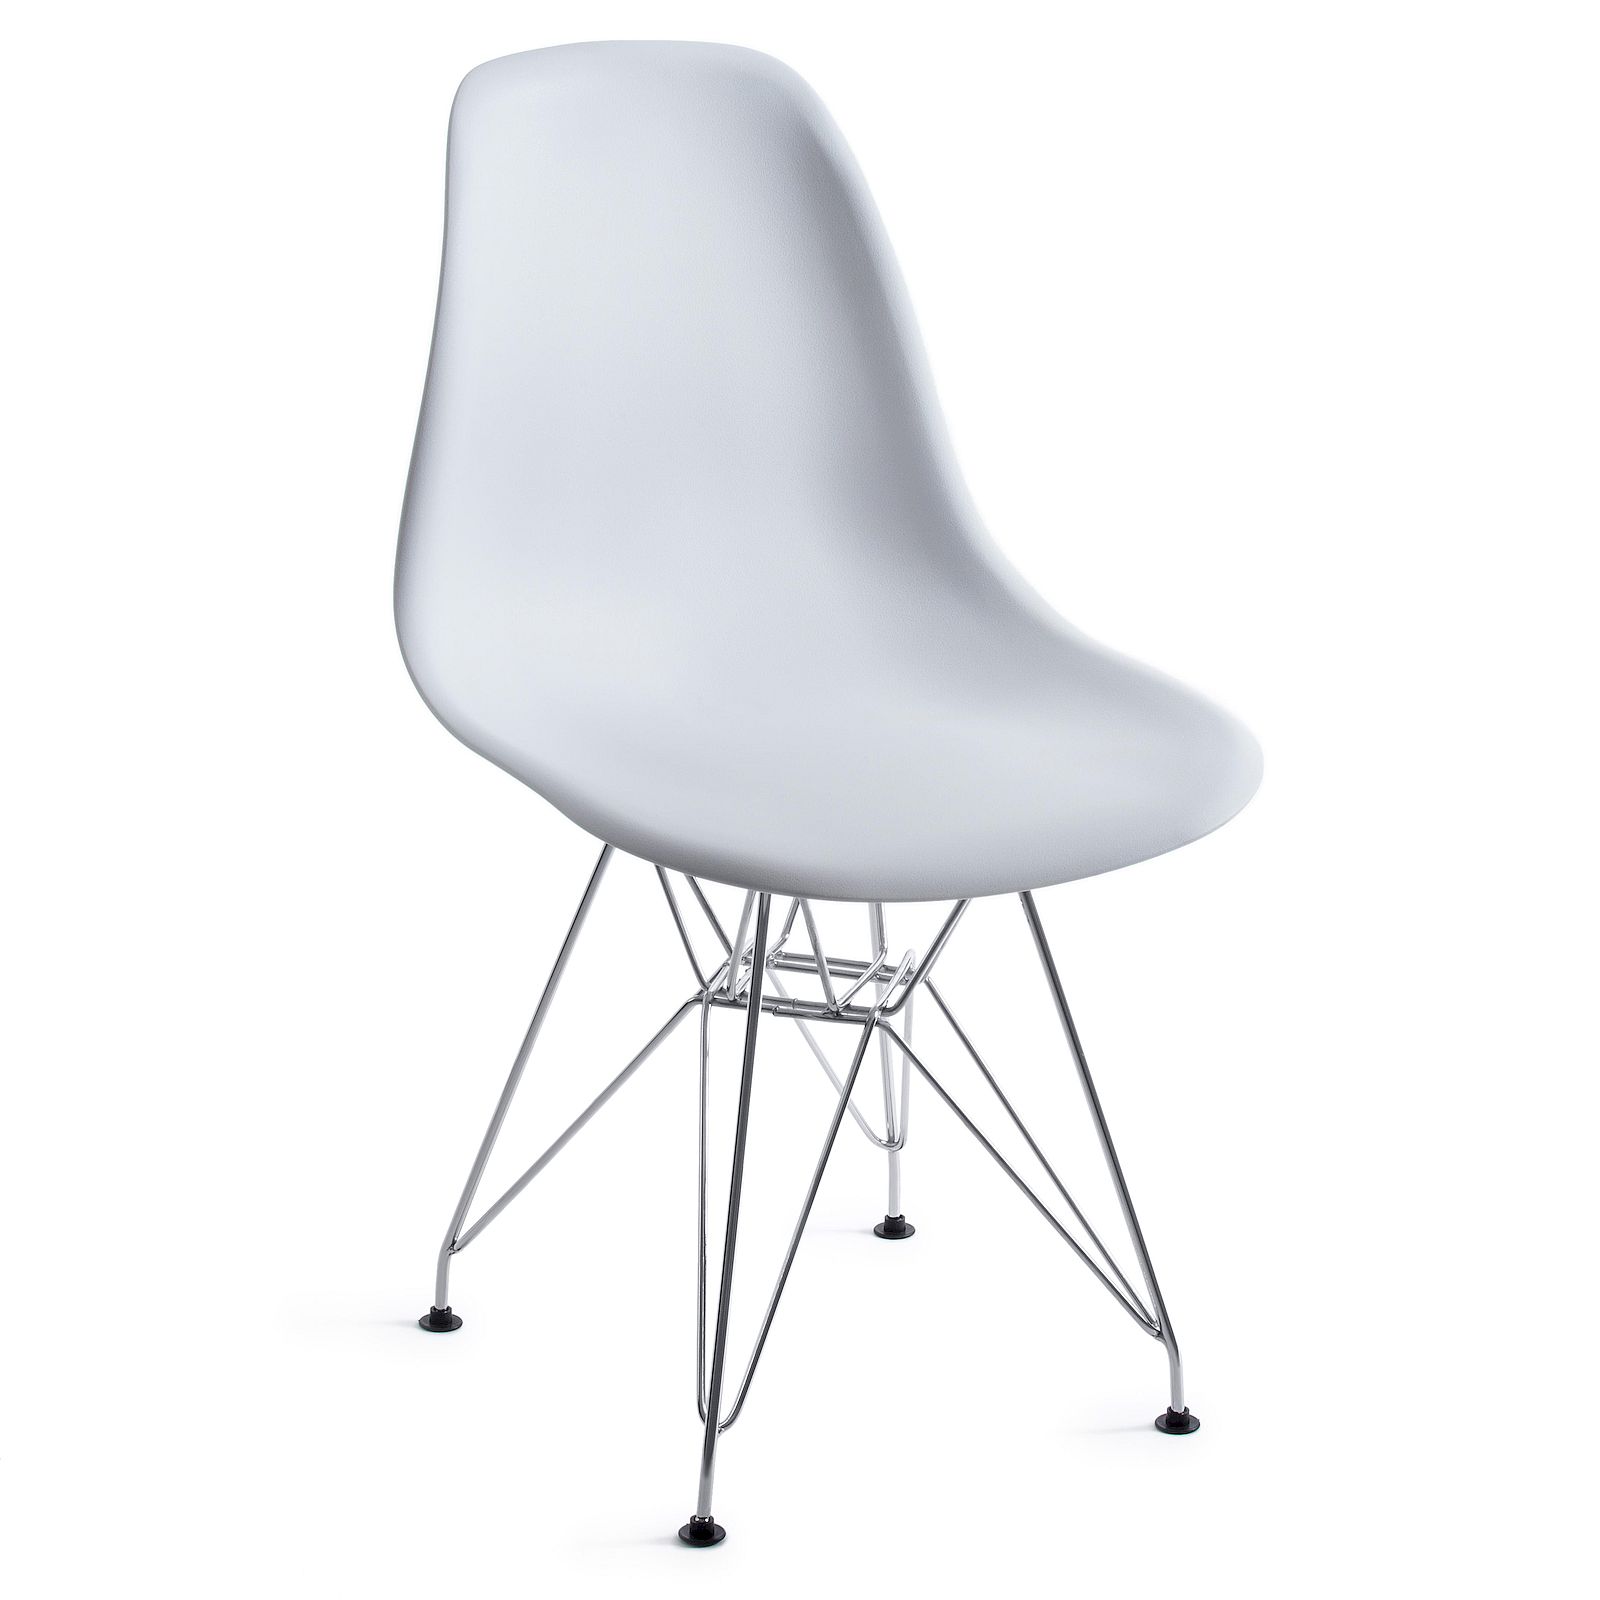  Secret De Maison Cindy Eames Iron Chair 002 white